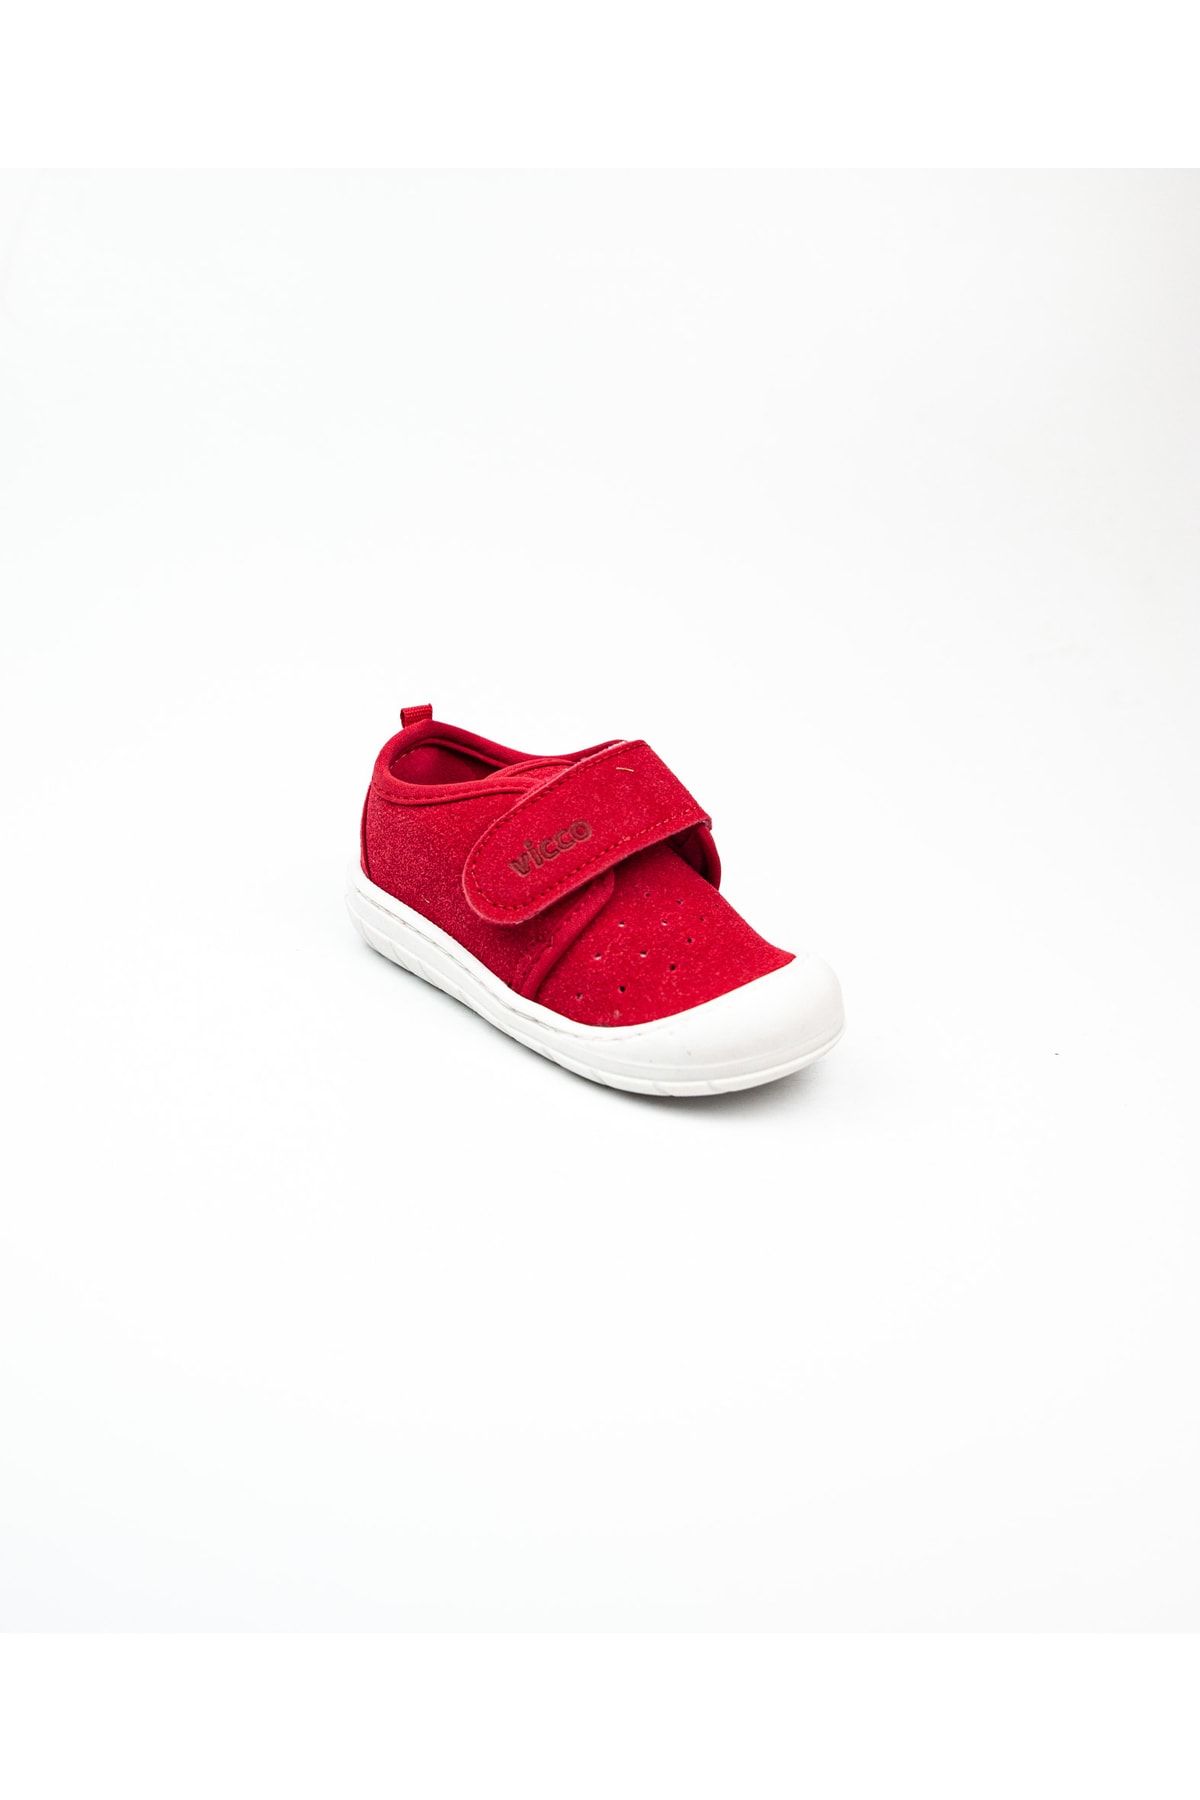 Vicco 950. B21k. 225 Anka Kırmızı Deri Bebek Ayakkabı